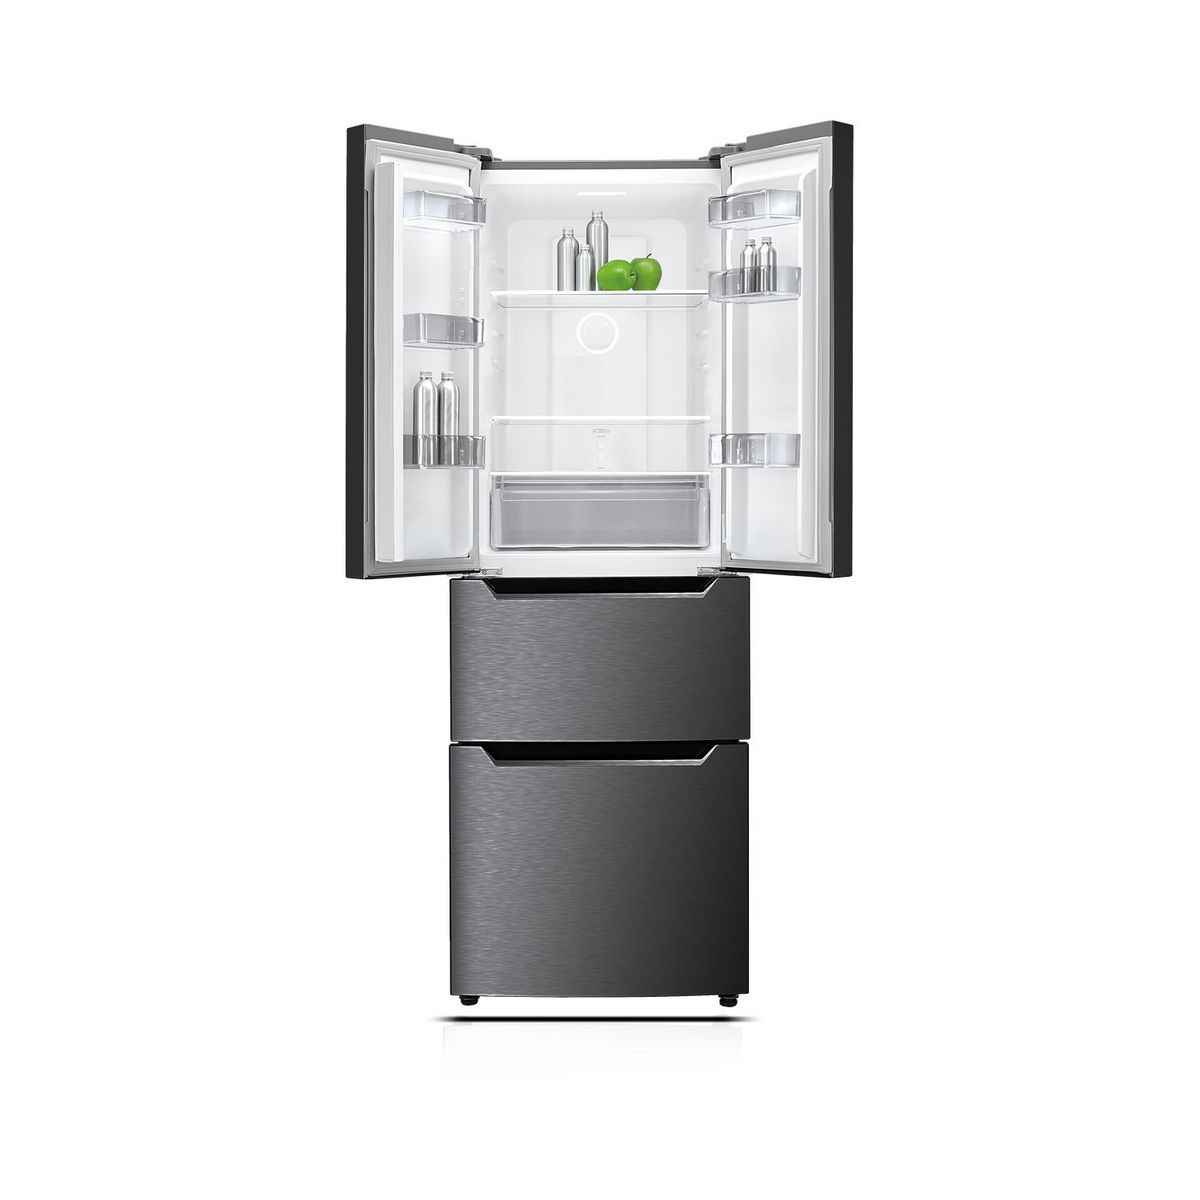 Réfrigérateur multi portes 155484 QILIVE 320 L pas cher - Réfrigérateur américain Auchan